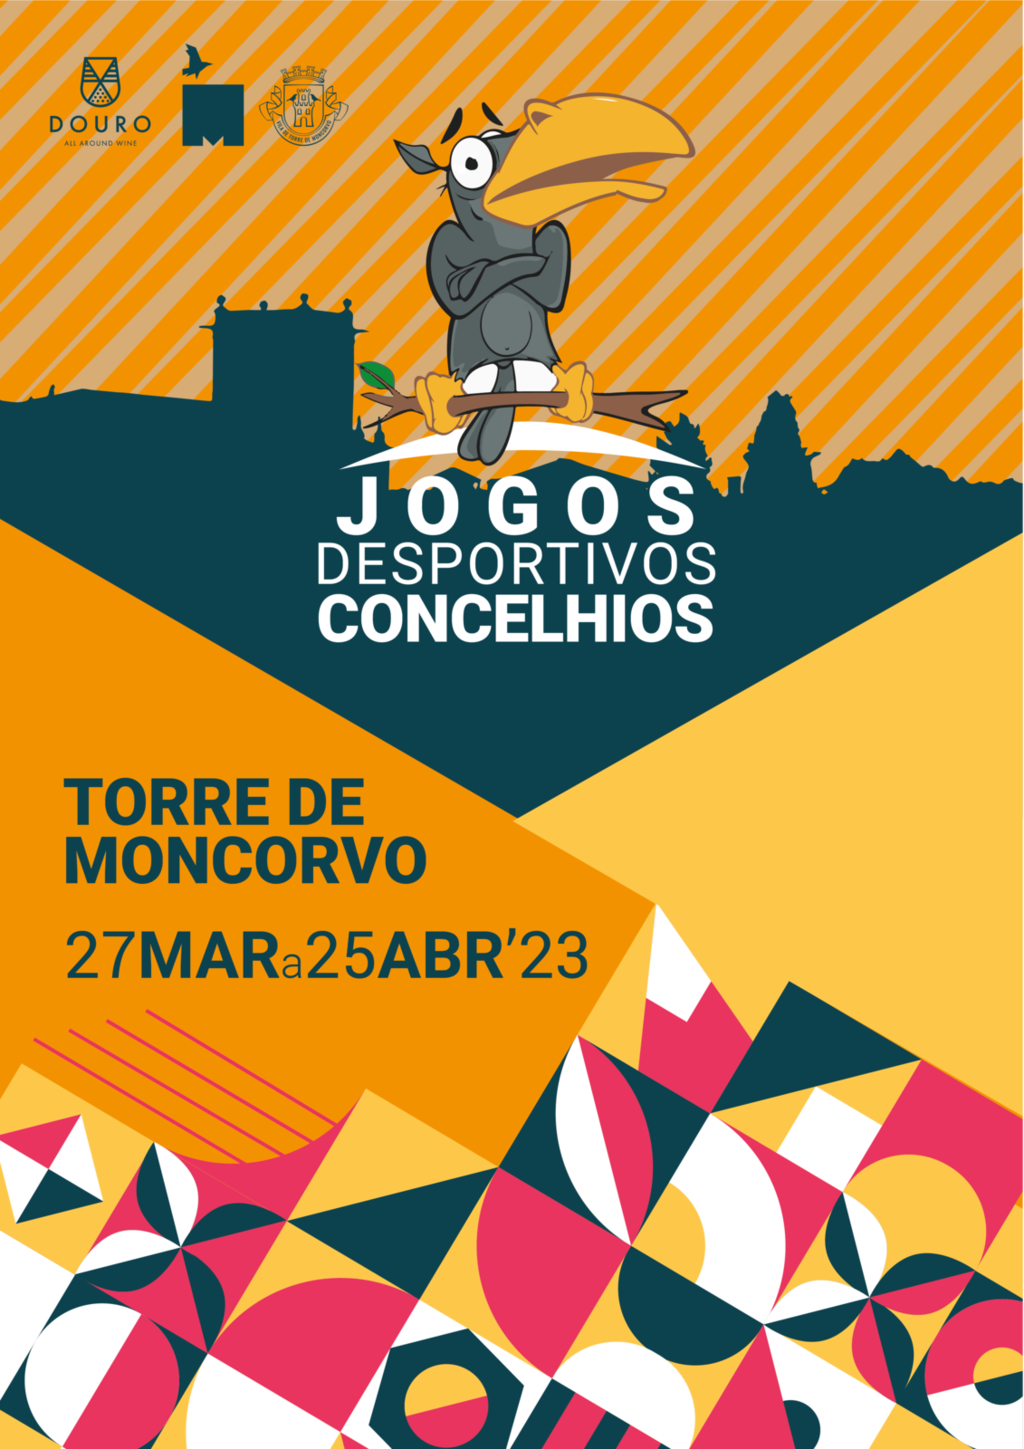 Município de Torre de Moncorvo promove mais uma edição dos Jogos Desportivos Concelhios 